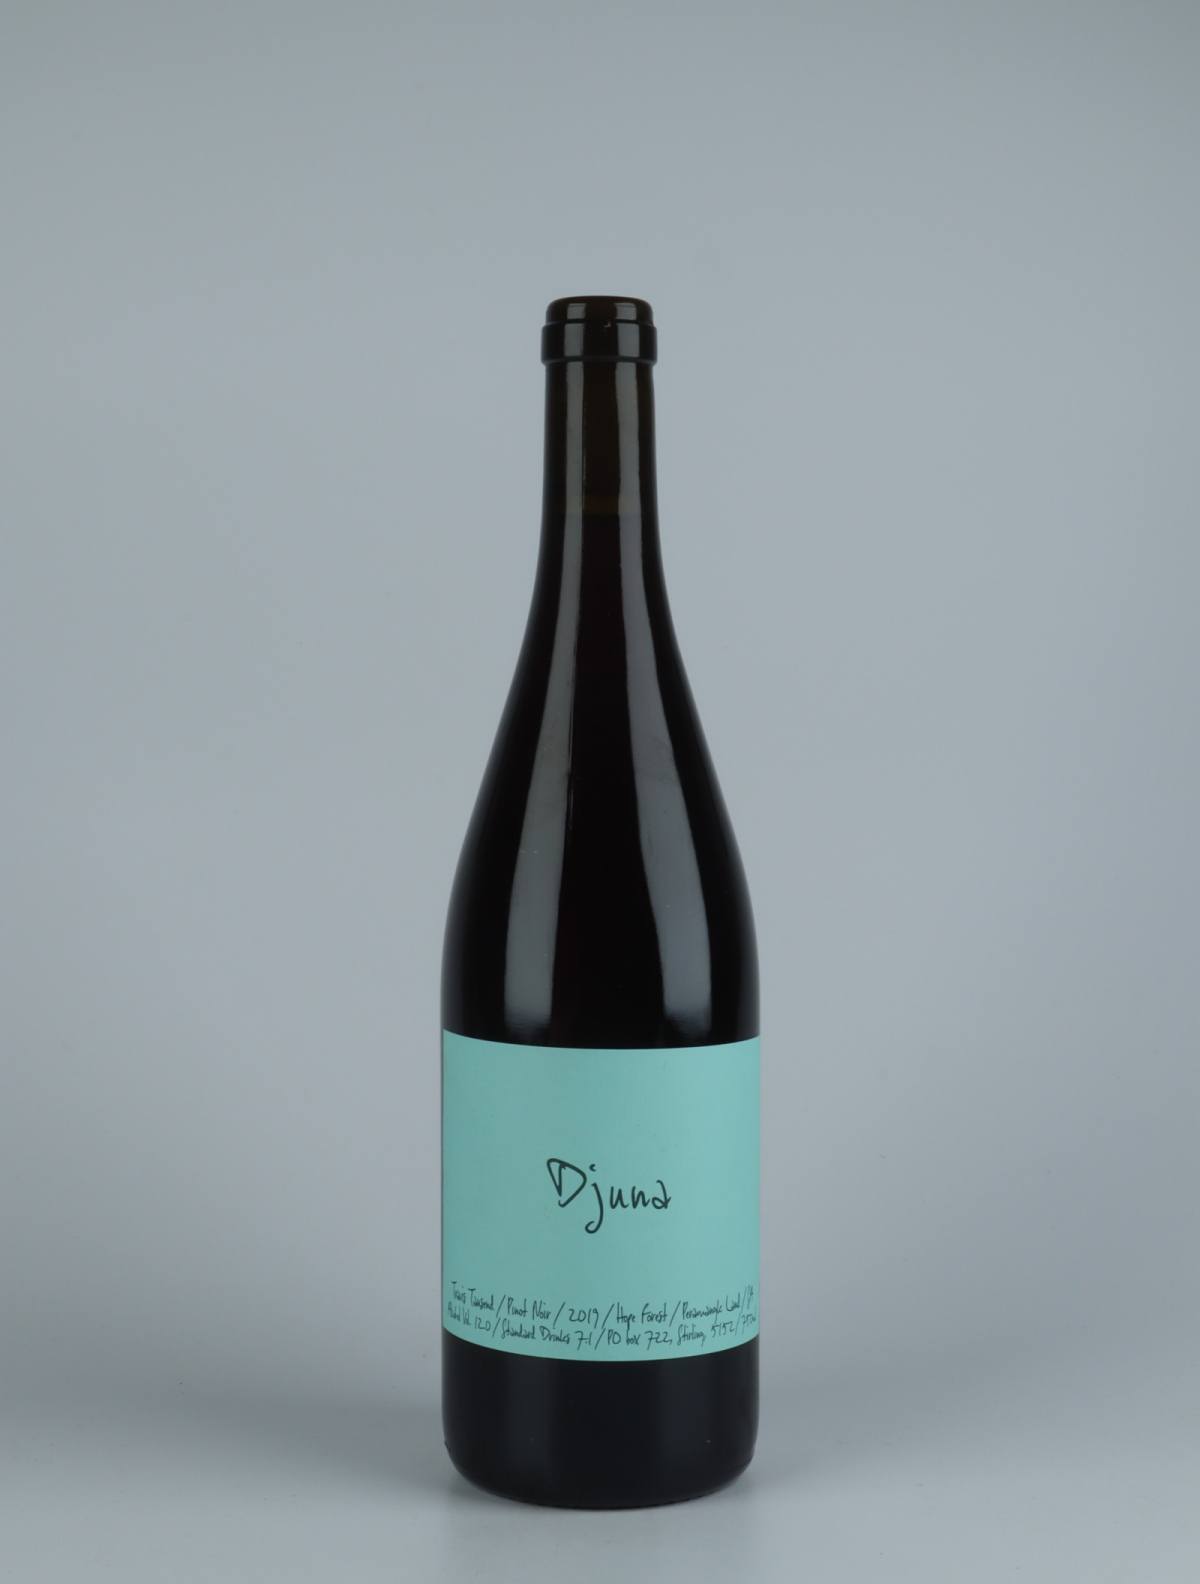 En flaske 2019 Djuna Pinot Noir Rødvin fra Travis Tausend, Adelaide Hills i Australien